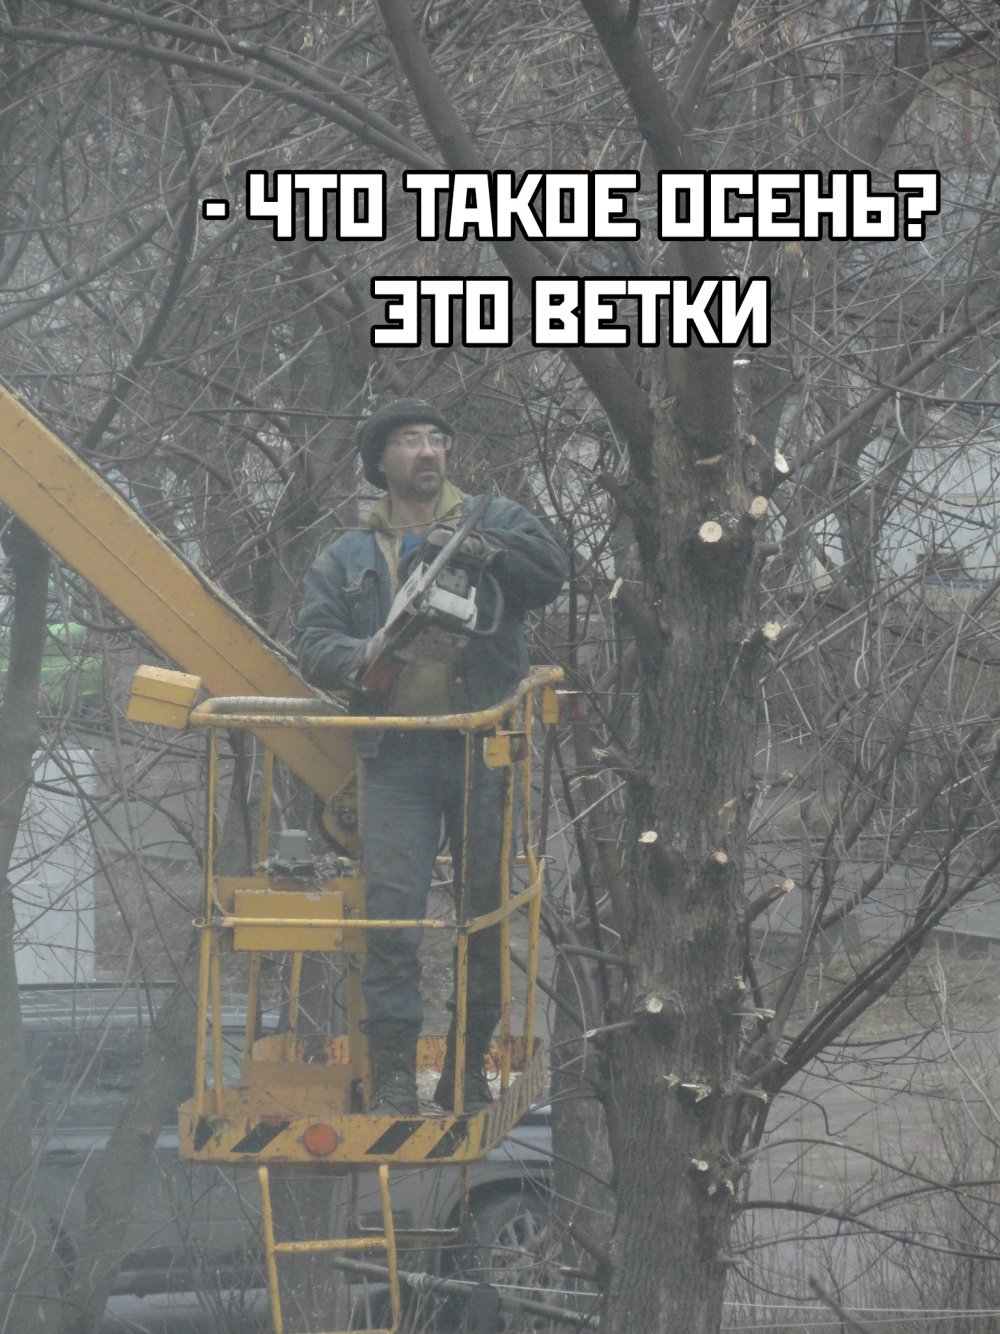 Юрий Шевчук пилит деревья